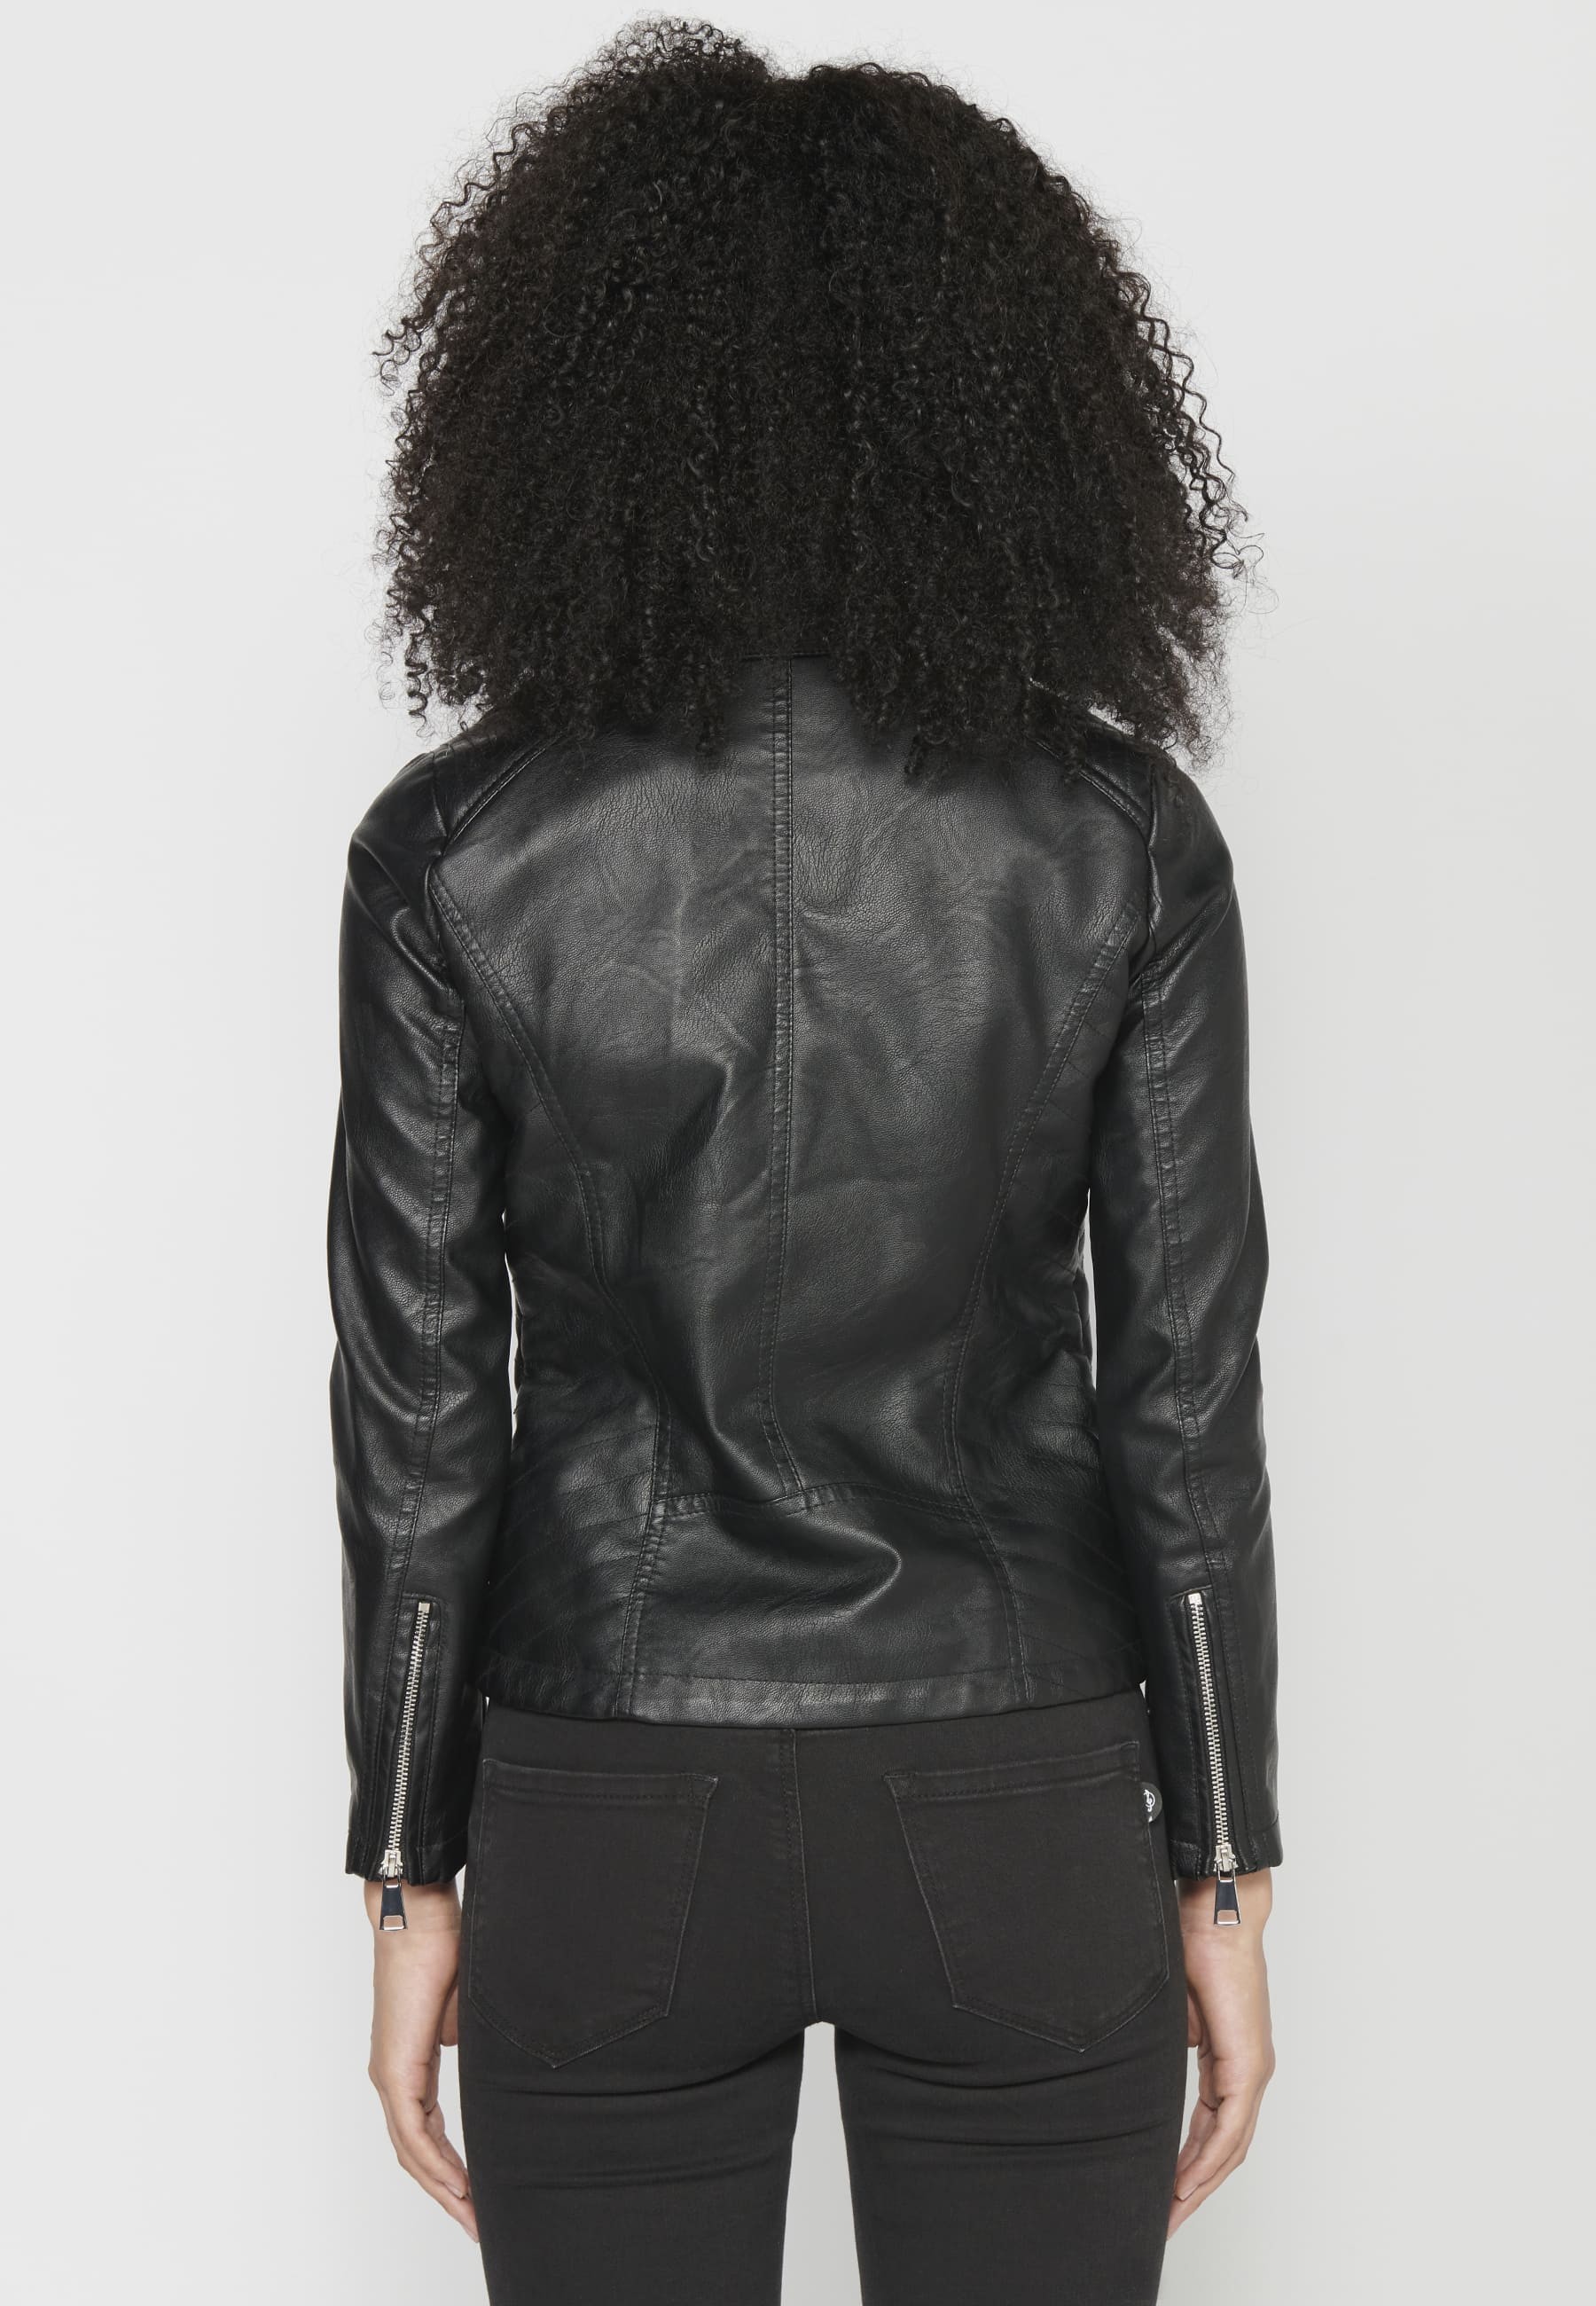 Jaqueta caçadora cuir sintètic color Negre per a Dona